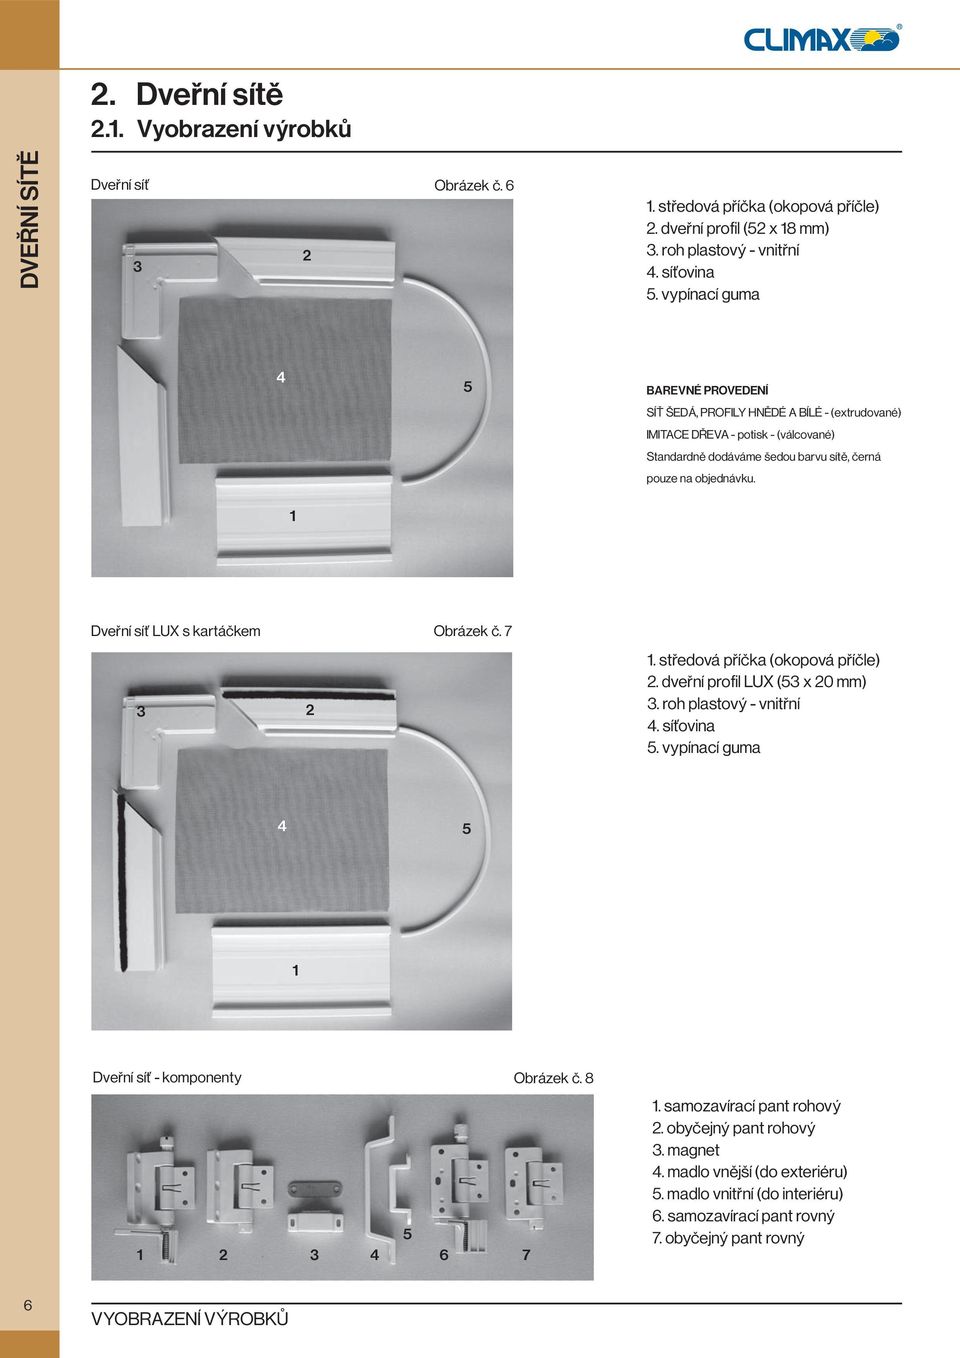 1 Dveřní síť LUX s kartáčkem Obrázek č. 7 3 2 1. středová příčka (okopová příčle) 2. dveřní profil LUX (53 x 20 mm) 3. roh plastový - vnitřní 4. síťovina 5.